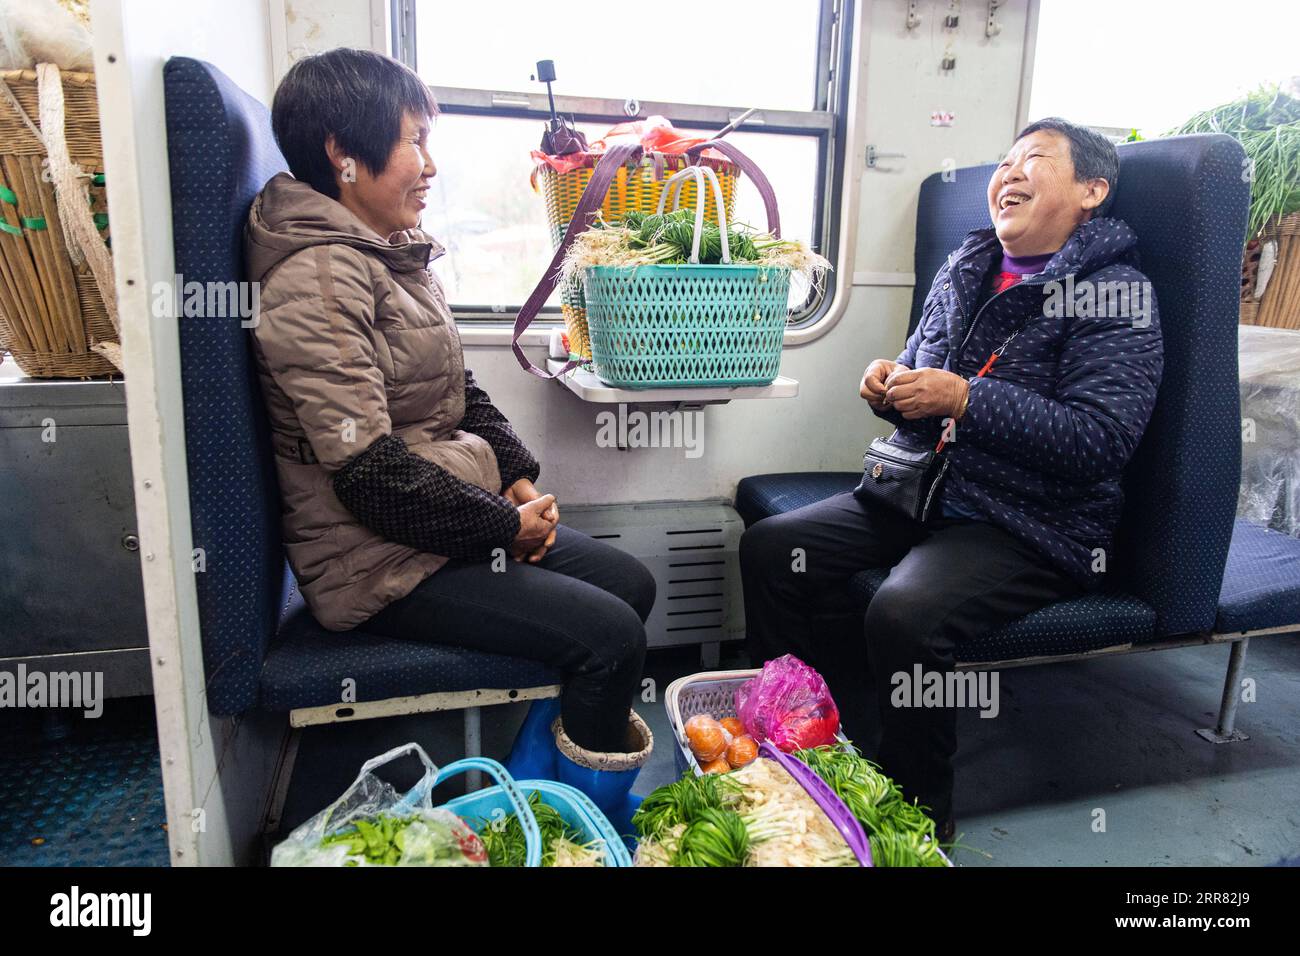 210414 -- CHANGSHA, 14 aprile 2021 -- i passeggeri chiacchierano sul treno 7266 nella provincia centrale di Hunan della Cina, 11 aprile 2021. I treni 7265/7266/7267 iniziarono a funzionare nel 1995, estendendosi per più di 300 chilometri dalla stazione di Huaihua alla stazione di Lixian. I treni passano 37 fermate lungo il tragitto in 9 ore e 16 minuti. I prezzi dei biglietti variano da 1 yuan a 23,5 yuanabout 0,15-3,59 dollari americani, che non sono stati aumentati in 26 anni. I treni attraversano le Wuling Mountains. Grazie a loro, gli abitanti del villaggio non solo possono portare in vendita frutta, verdura e altri prodotti locali, ma anche me Foto Stock